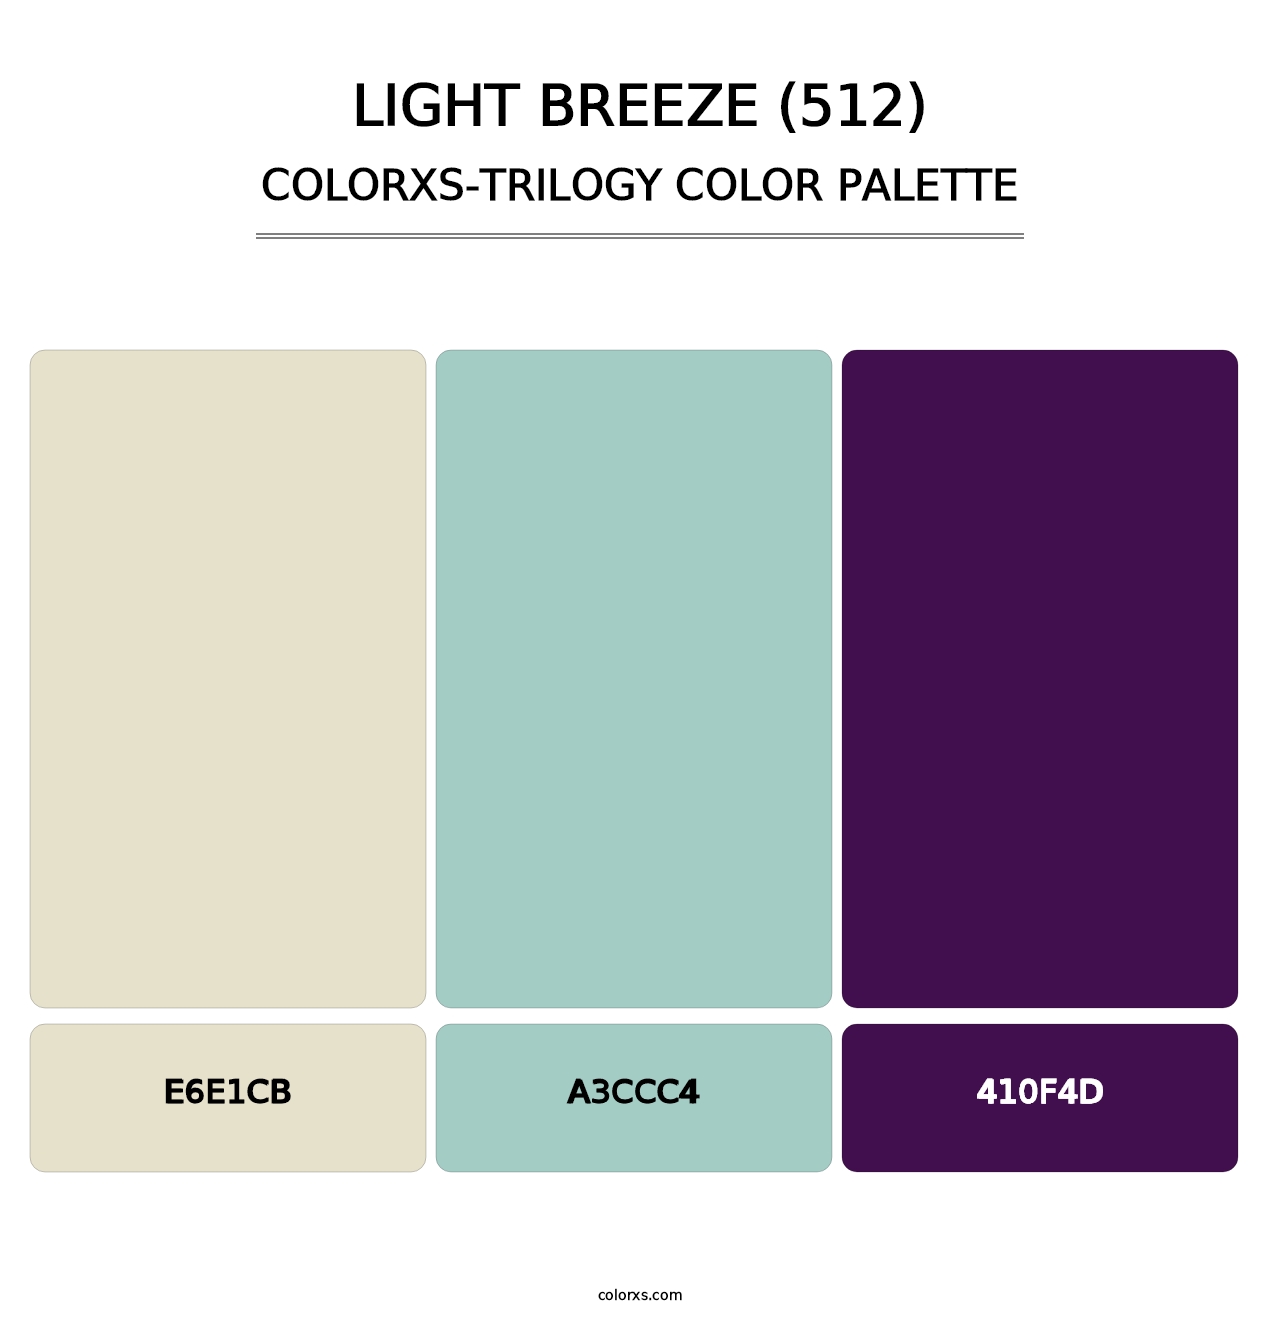 Light Breeze (512) - Colorxs Trilogy Palette